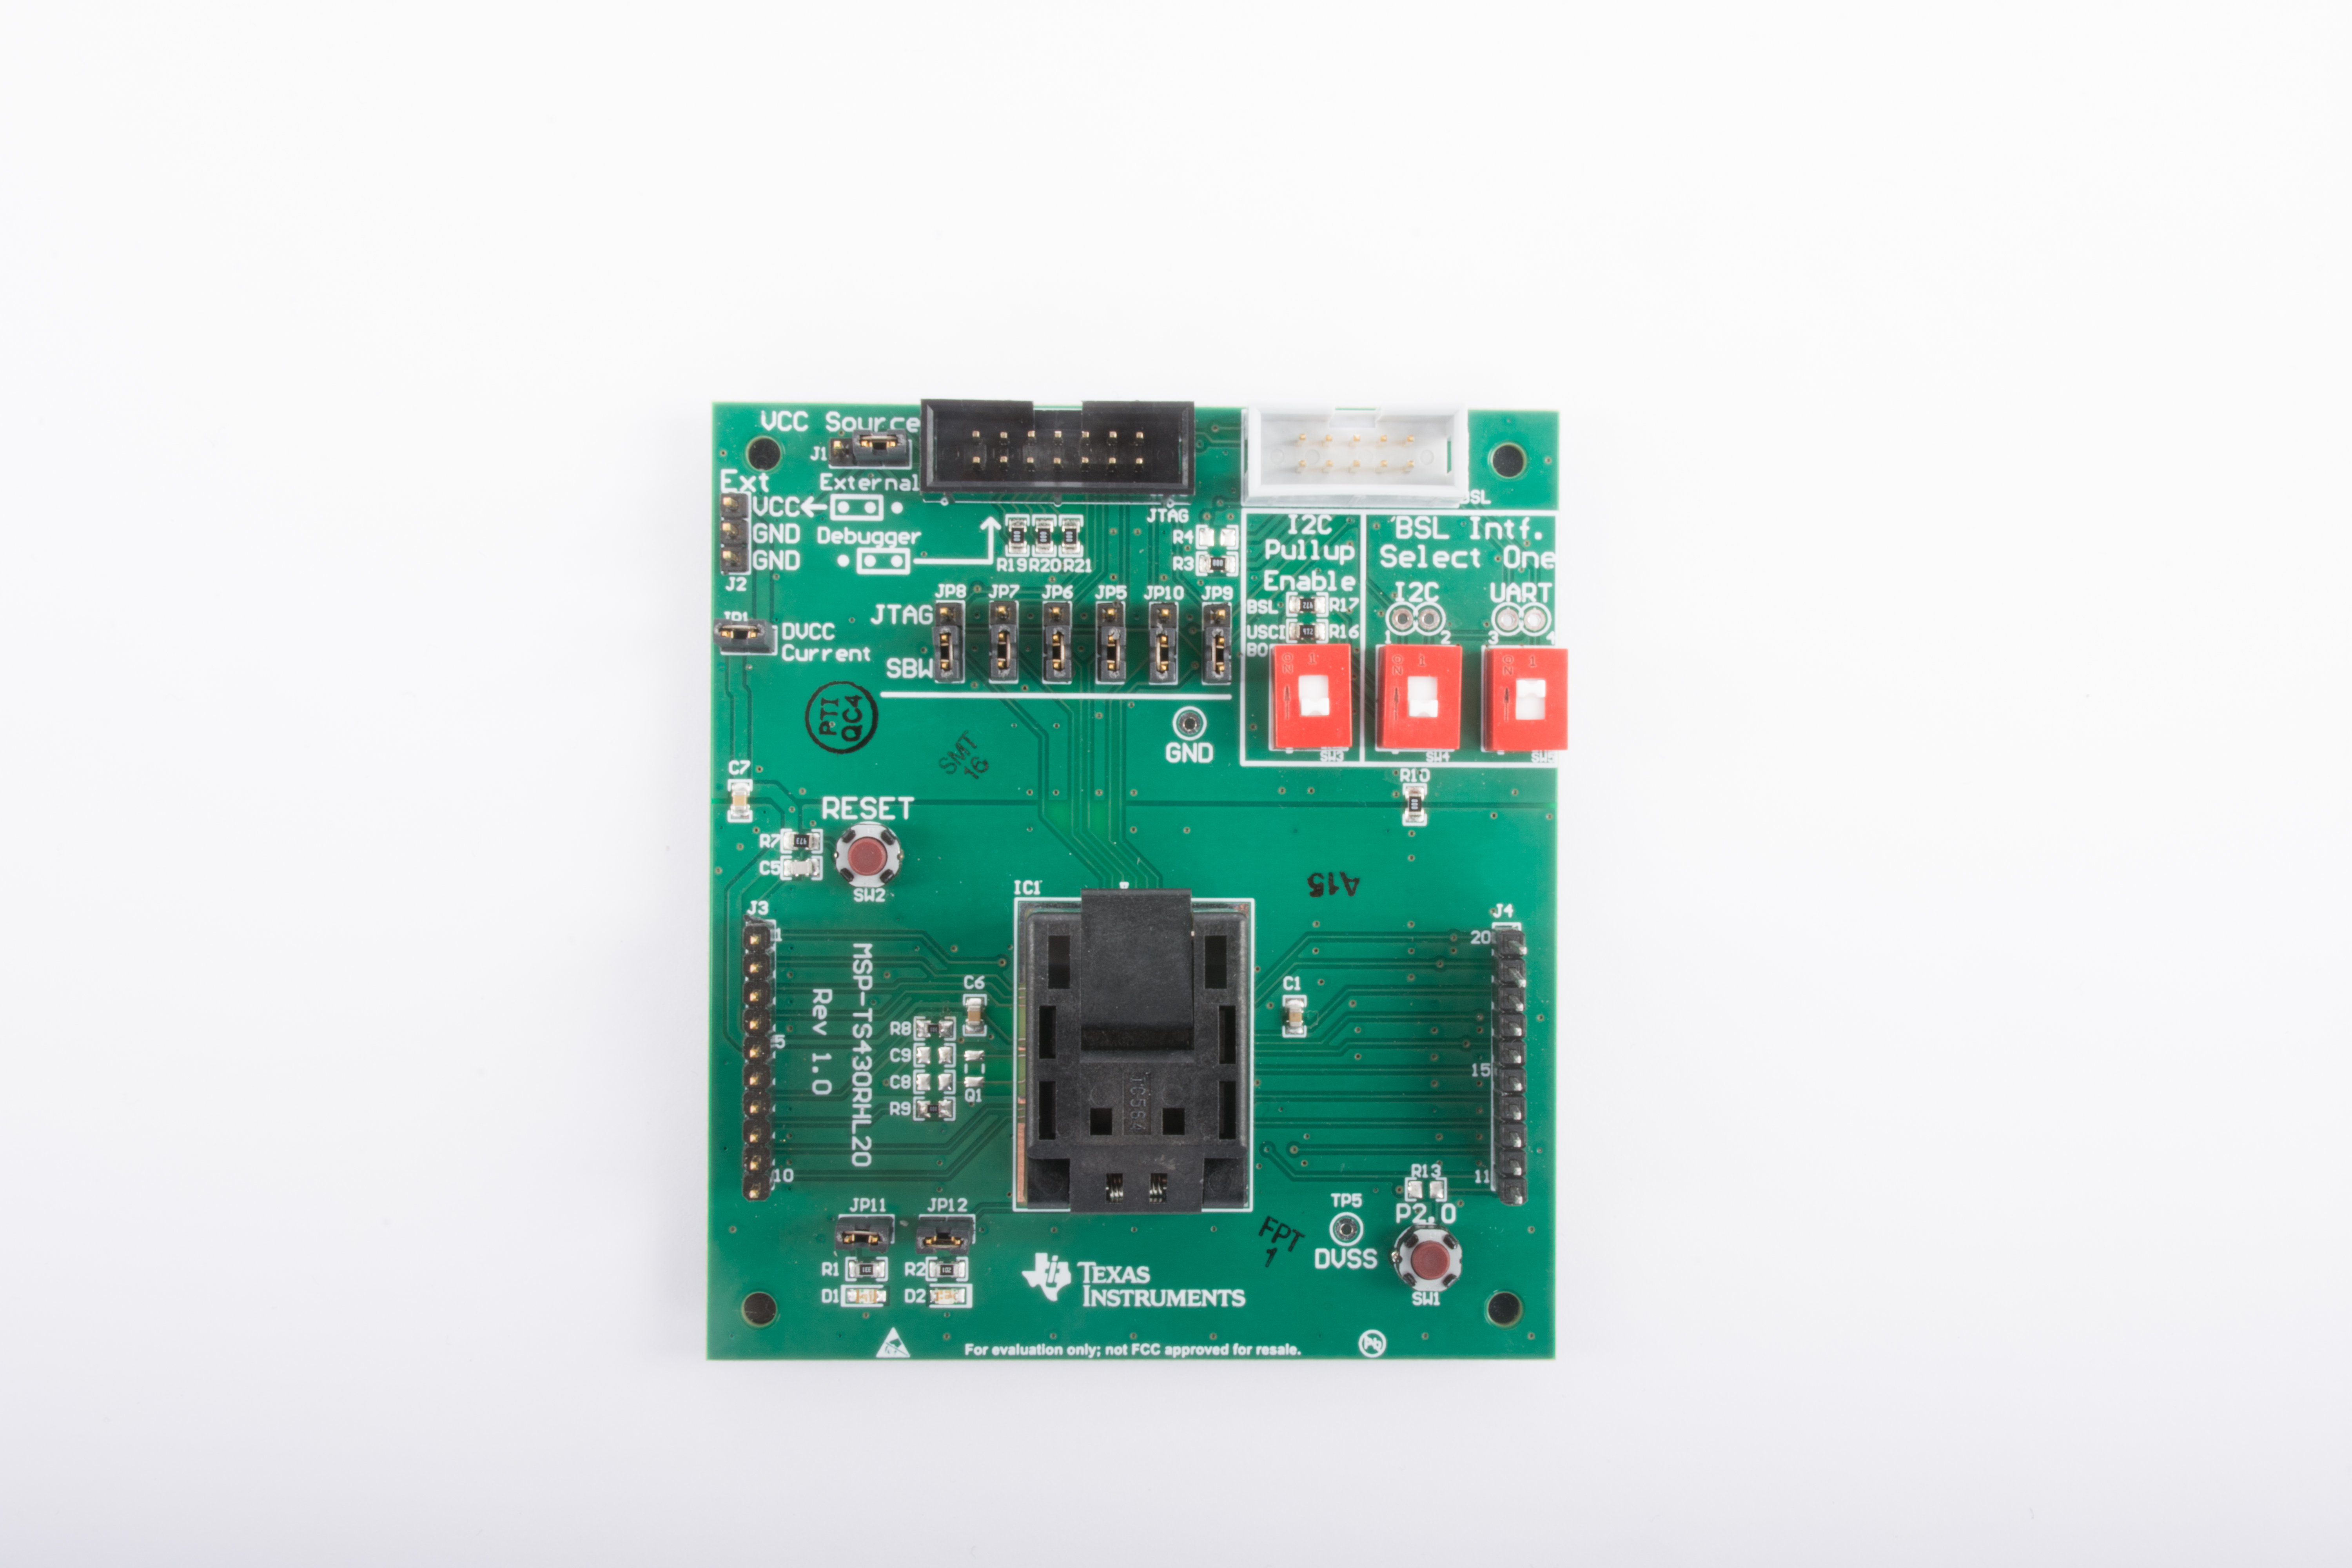 MSP-TS430RHL20 适用于 MSP430FR2422 和 MSP430FR25x2 MCU 的目标开发板 - 20 引脚（不包括微控制器） top board image